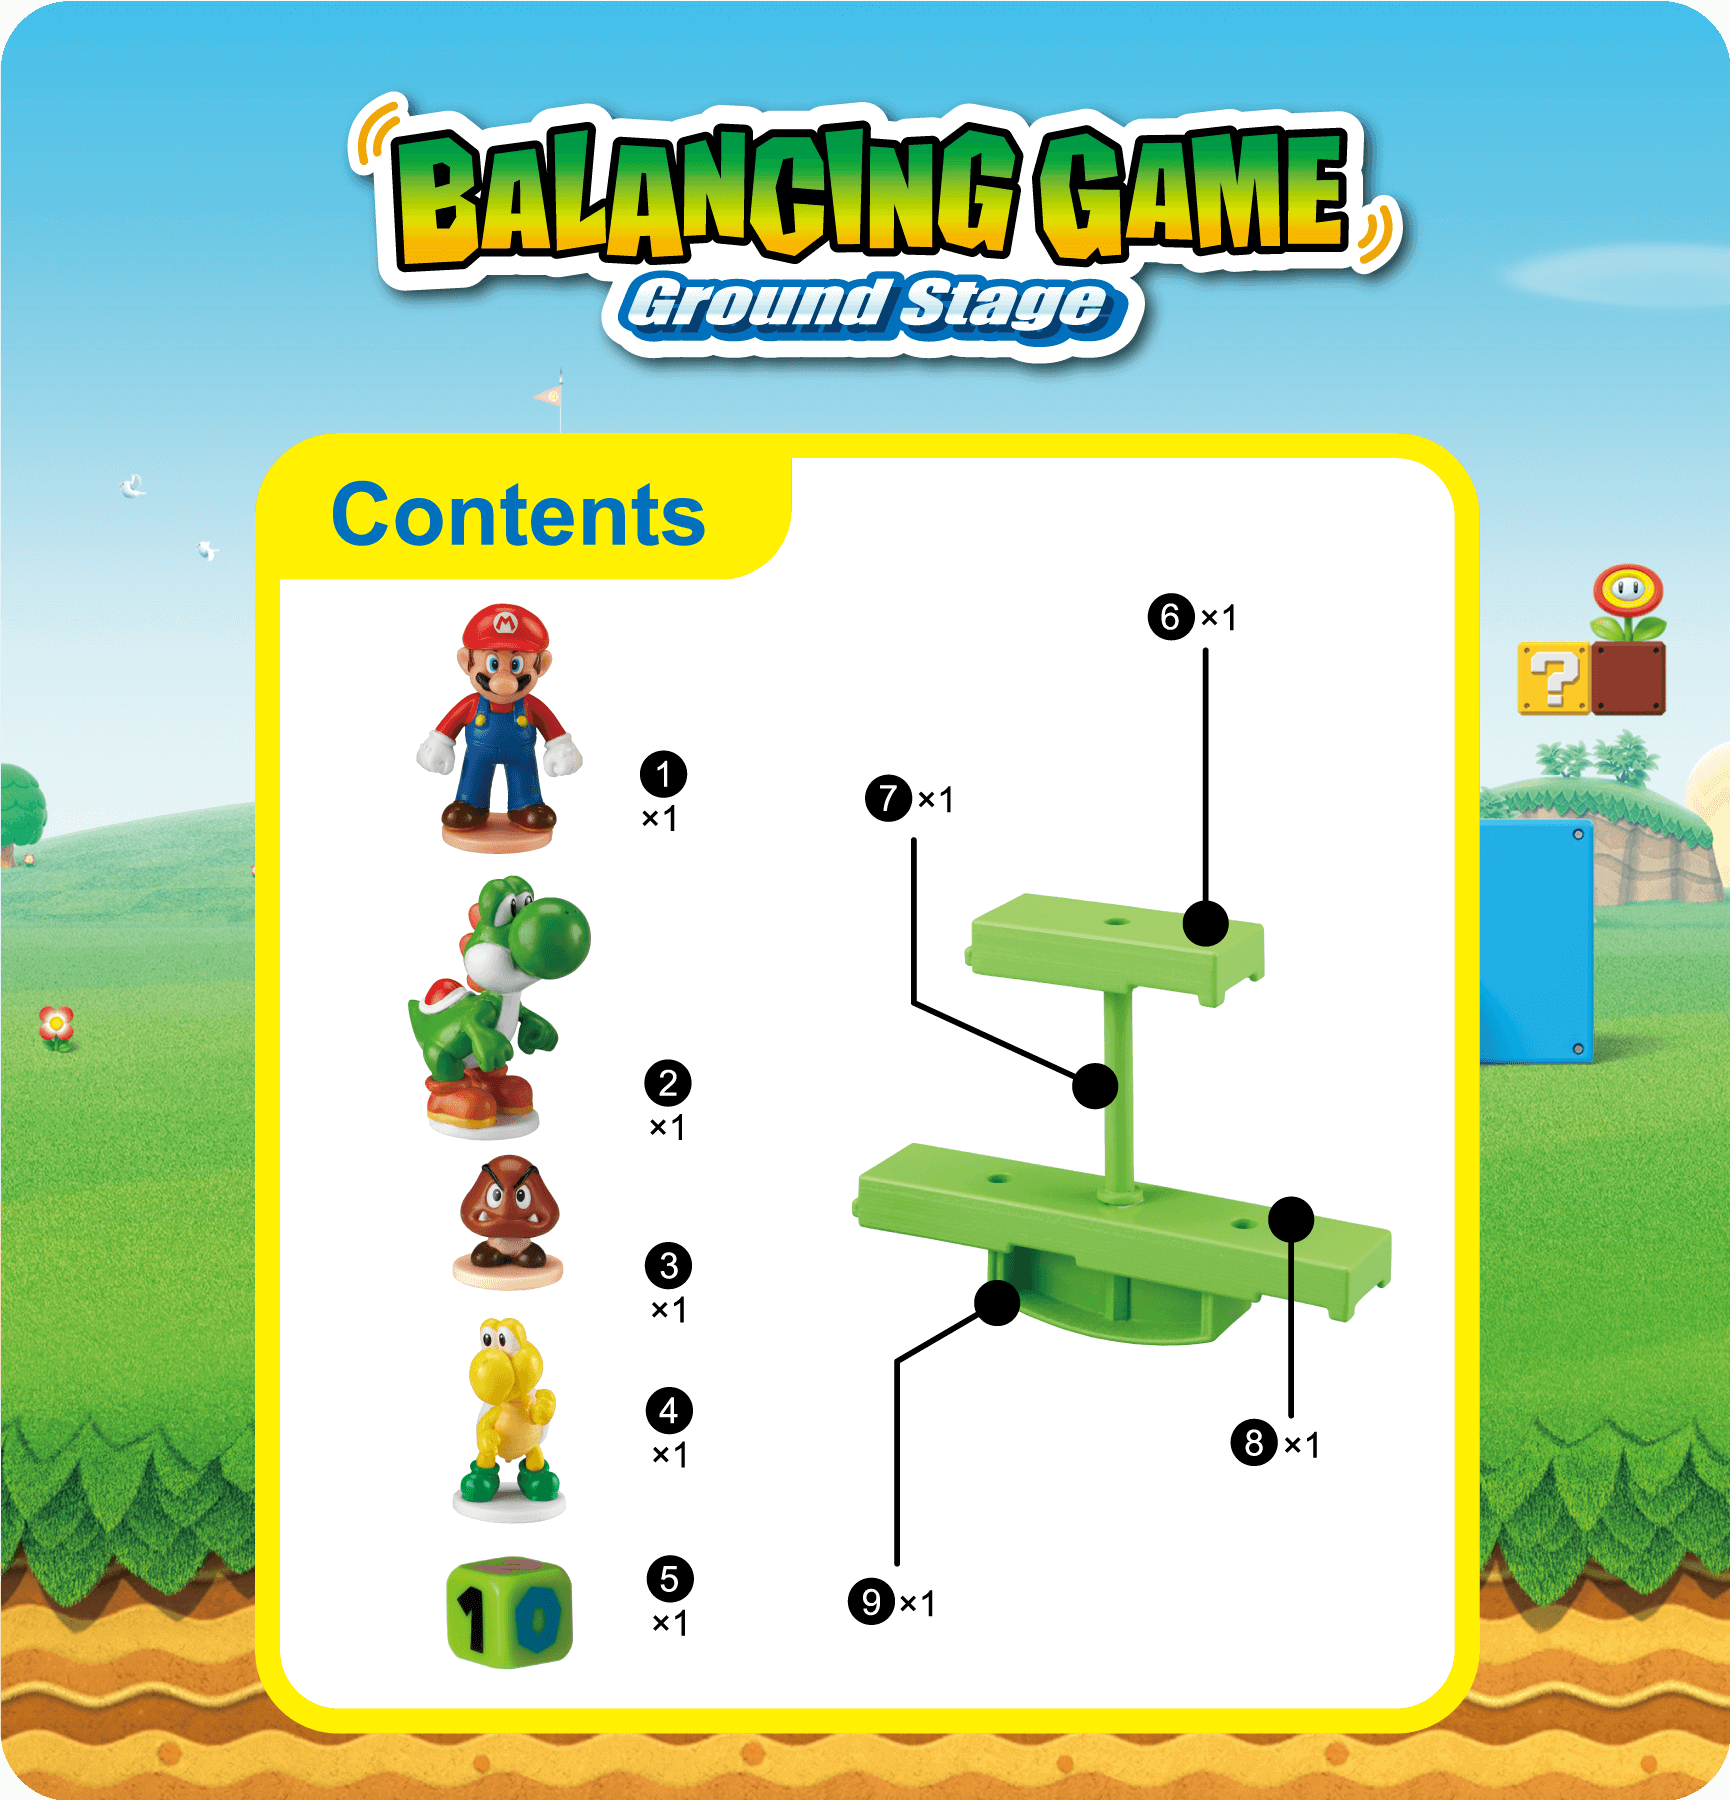 Super Mario Games juegos de sociedad balancing Game ground Stage balancierspiel 